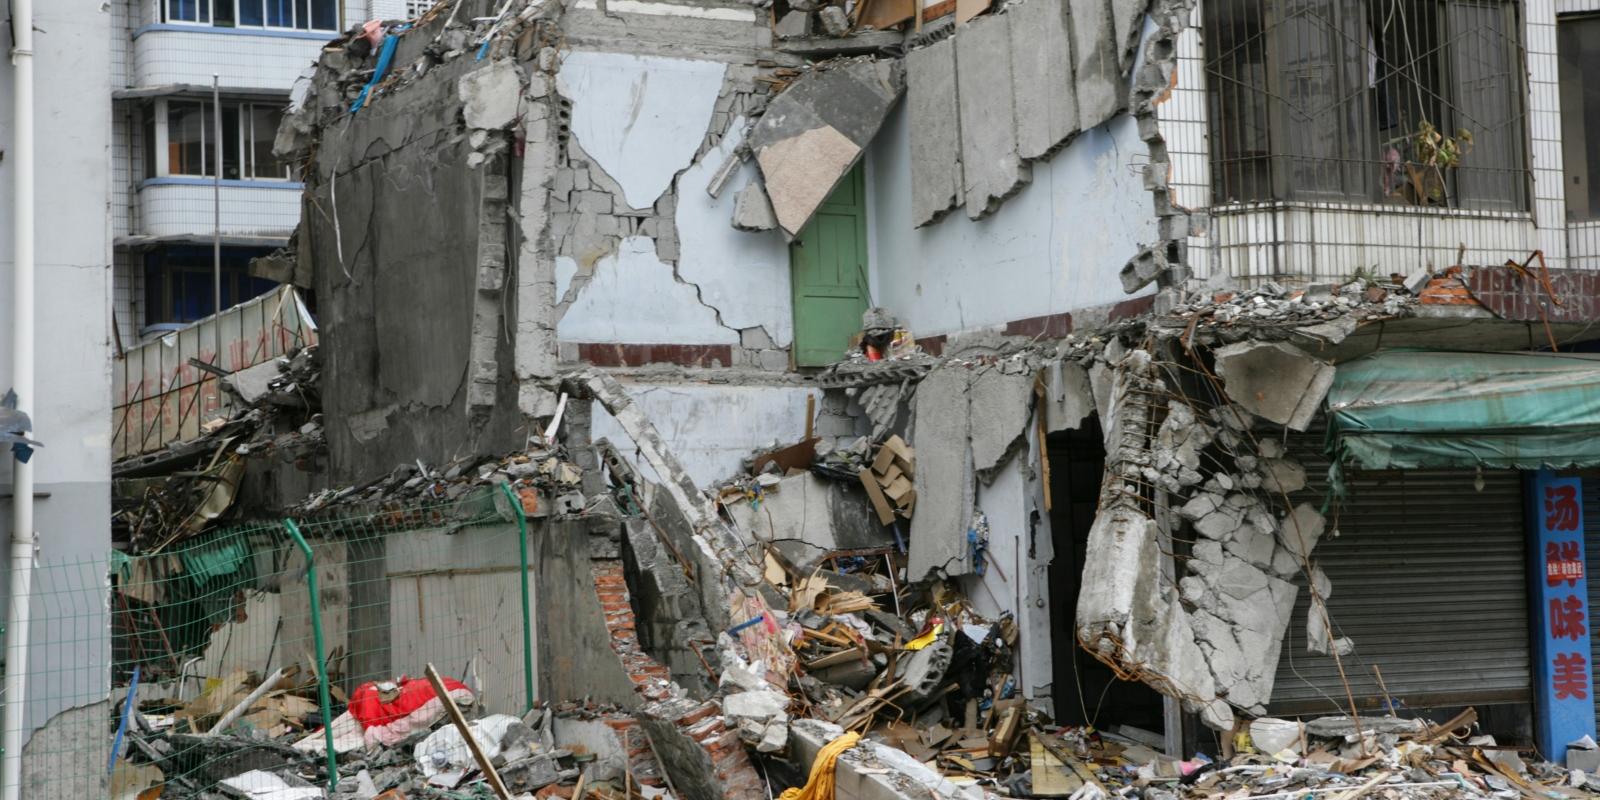 Erdbeben, notdürftig, Trümmer, Schutt, wohnungslos, eingestürzte Häuser,  Katastrophe, Notlage, Notstand, Ex-Bild-DB-ID: 23724